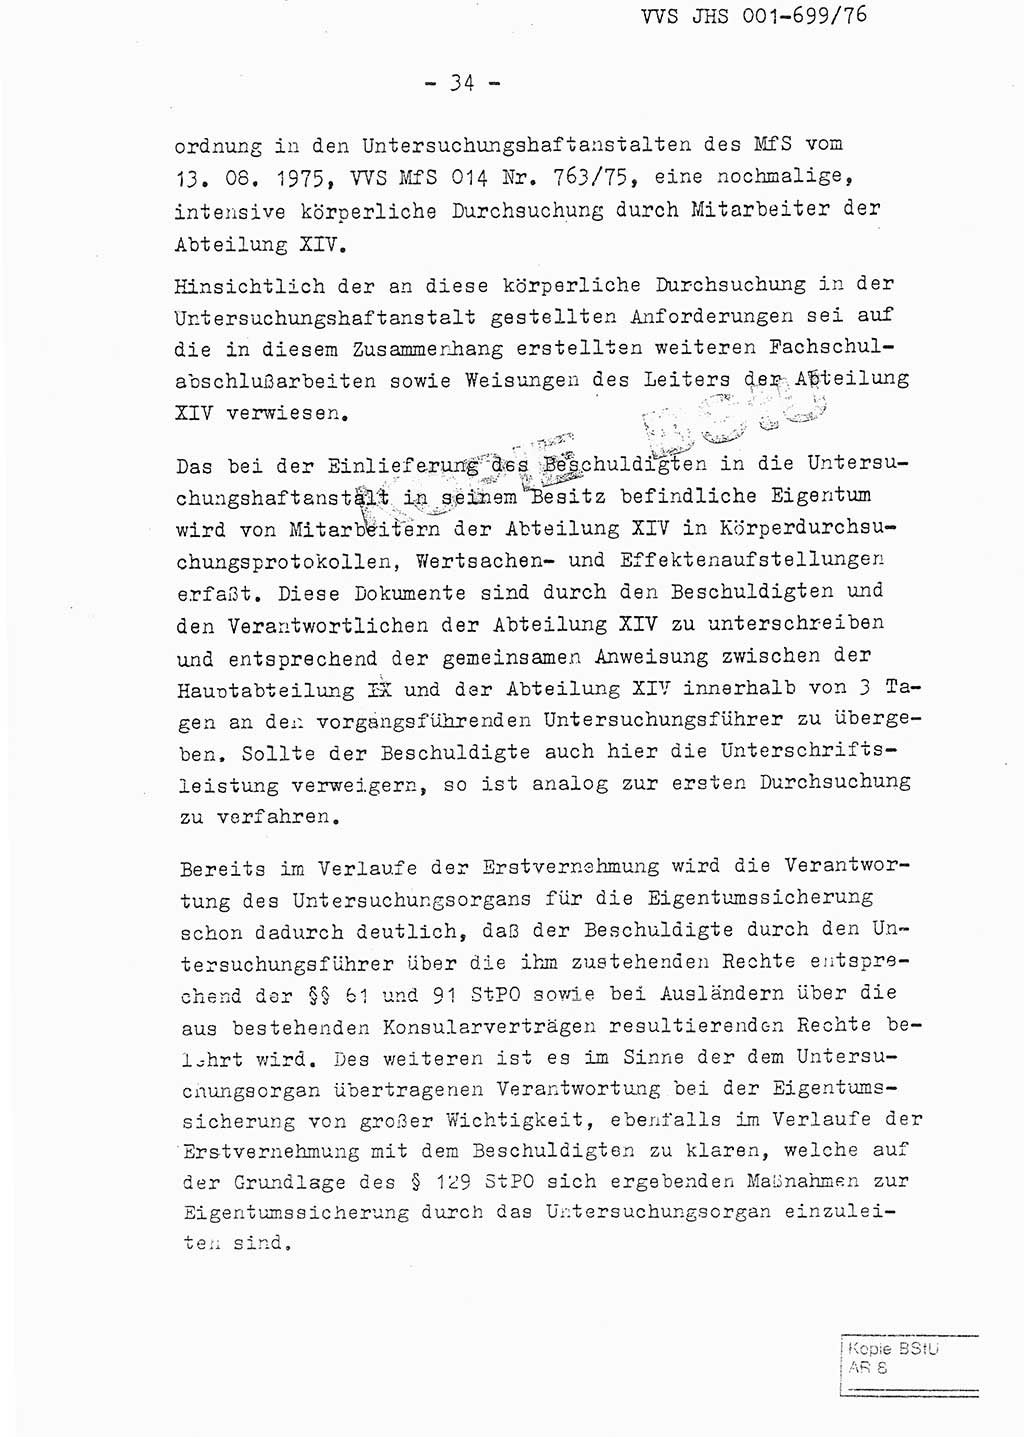 Fachschulabschlußarbeit Leutnant Volkmar Taubert (HA Ⅸ/9), Leutnant Axel Naumann (HA Ⅸ/9), Unterleutnat Detlef Debski (HA Ⅸ/9), Ministerium für Staatssicherheit (MfS) [Deutsche Demokratische Republik (DDR)], Juristische Hochschule (JHS), Vertrauliche Verschlußsache (VVS) 001-699/76, Potsdam 1976, Seite 34 (FS-Abschl.-Arb. MfS DDR JHS VVS 001-699/76 1976, S. 34)